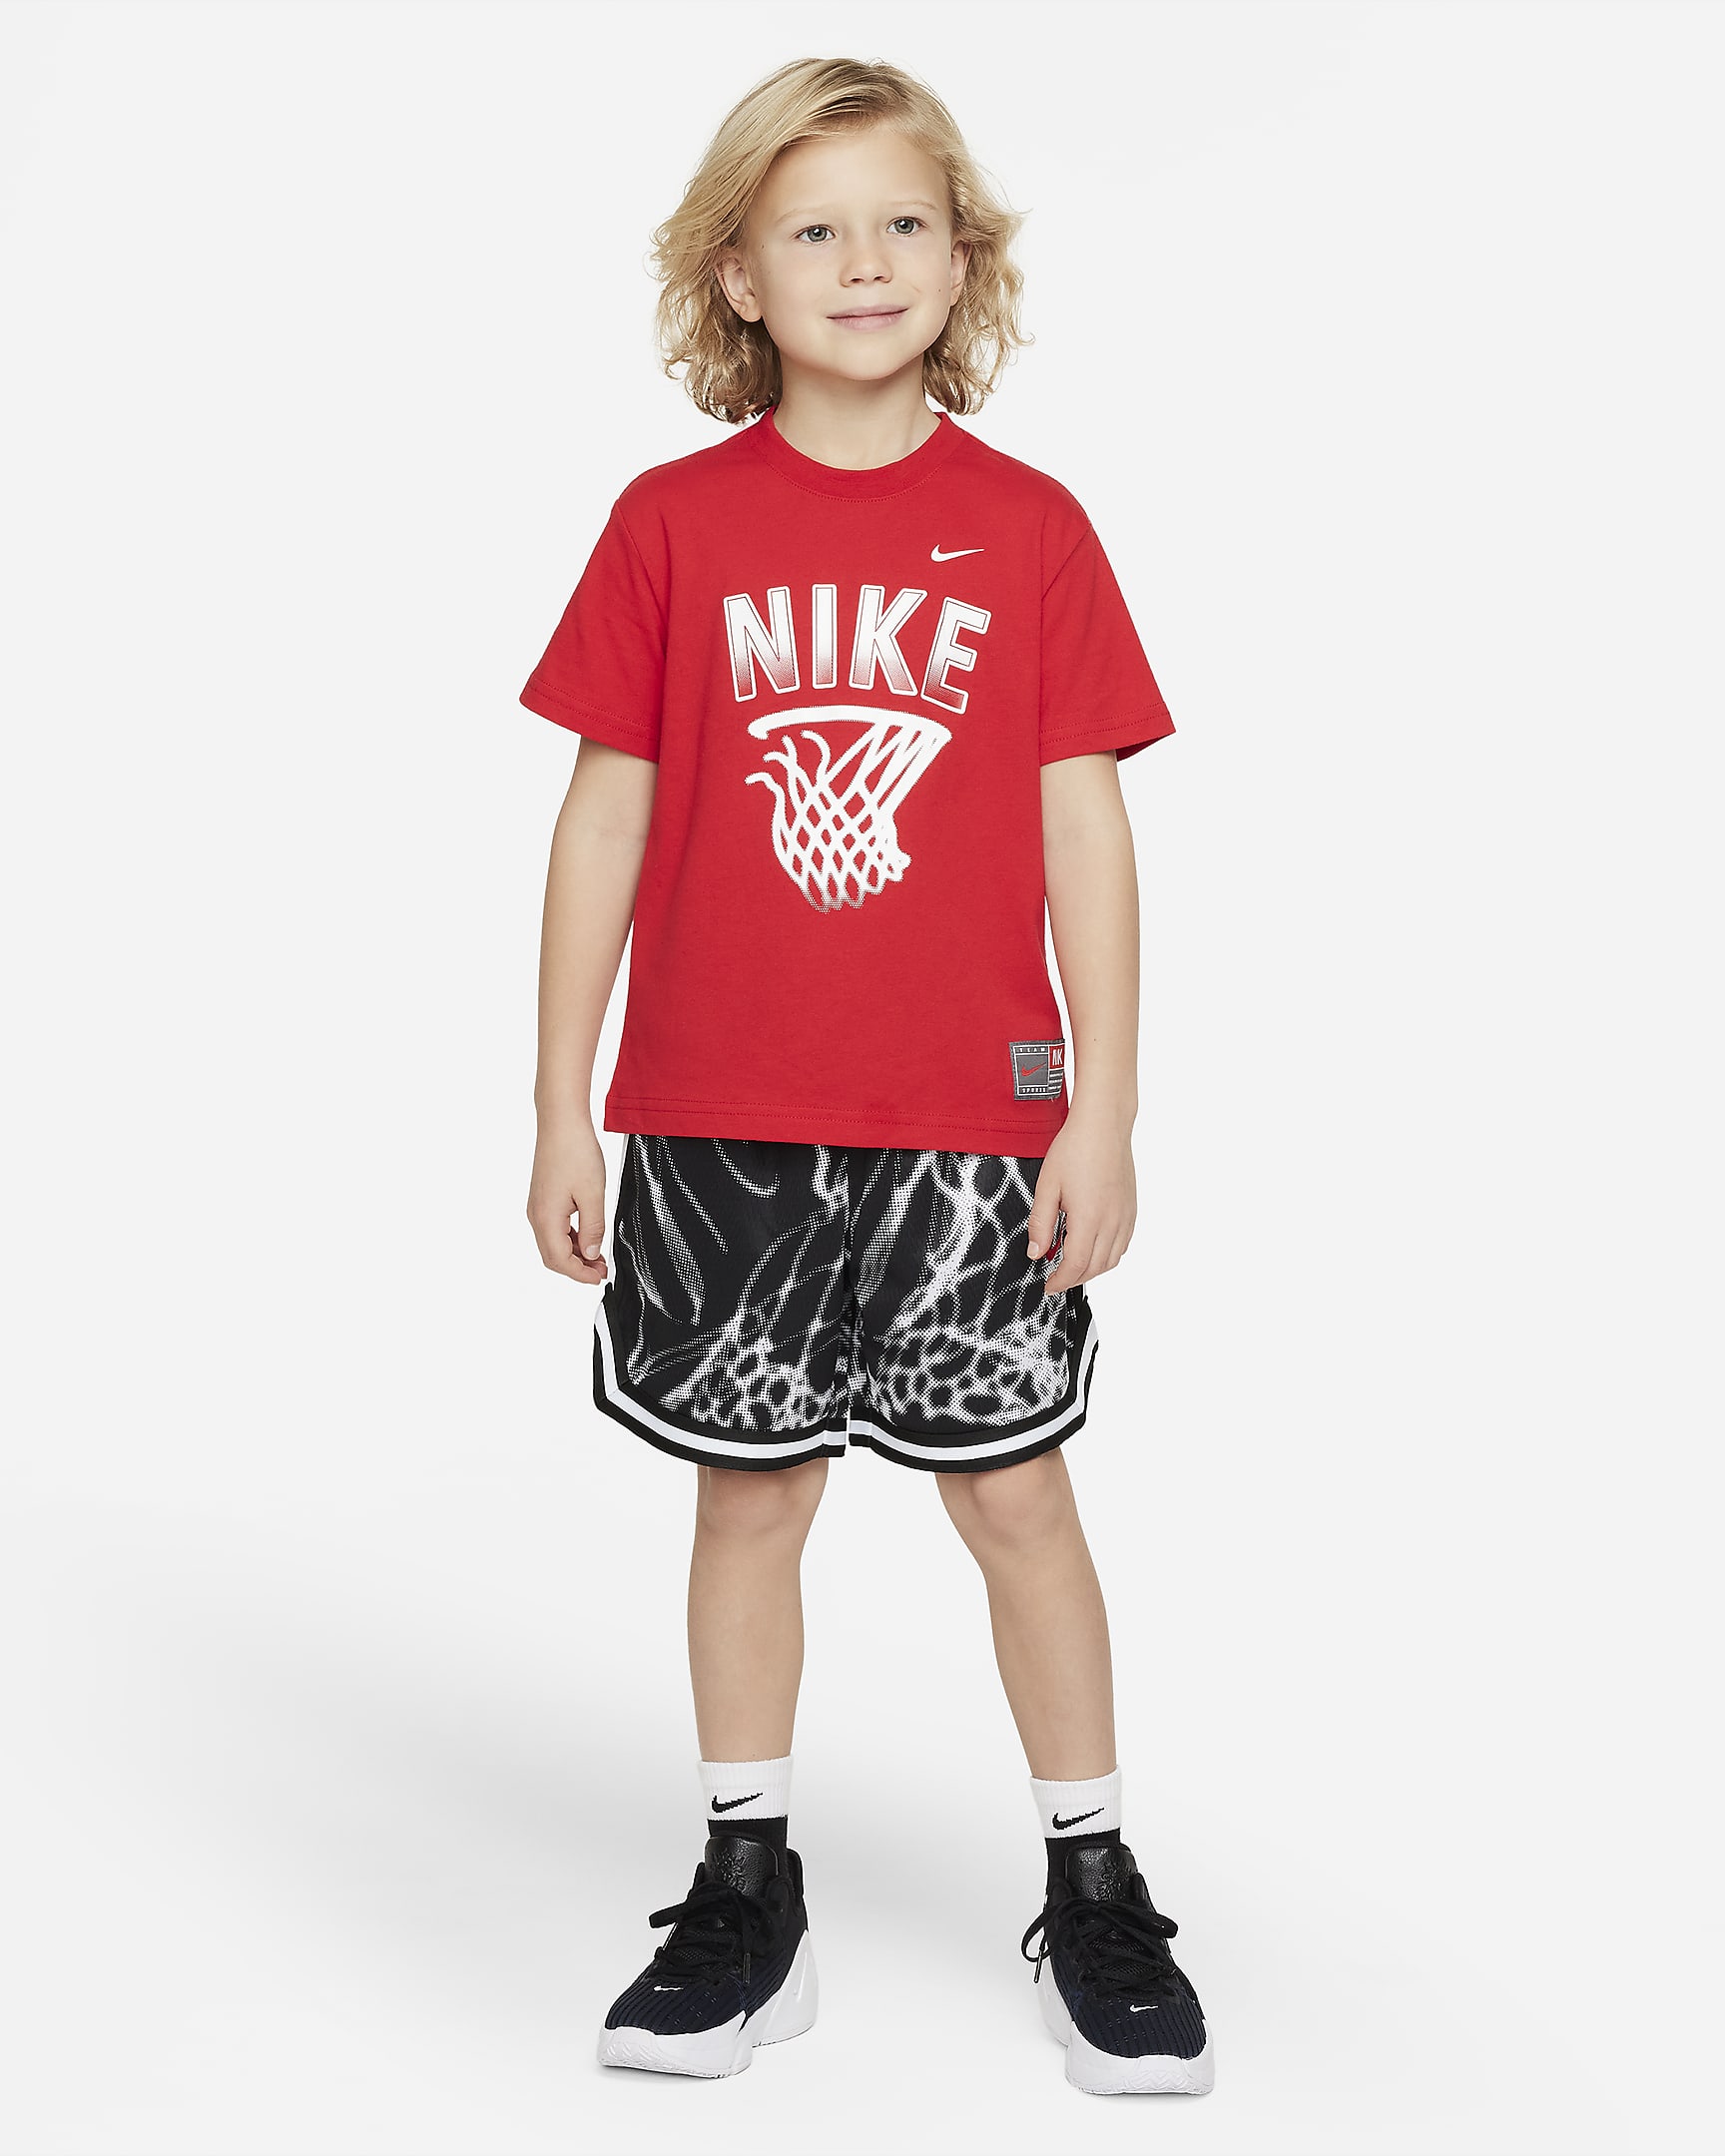 Nike Culture of Basketball Little Kids' Dri-FIT Mesh Shorts Set. Nike.com